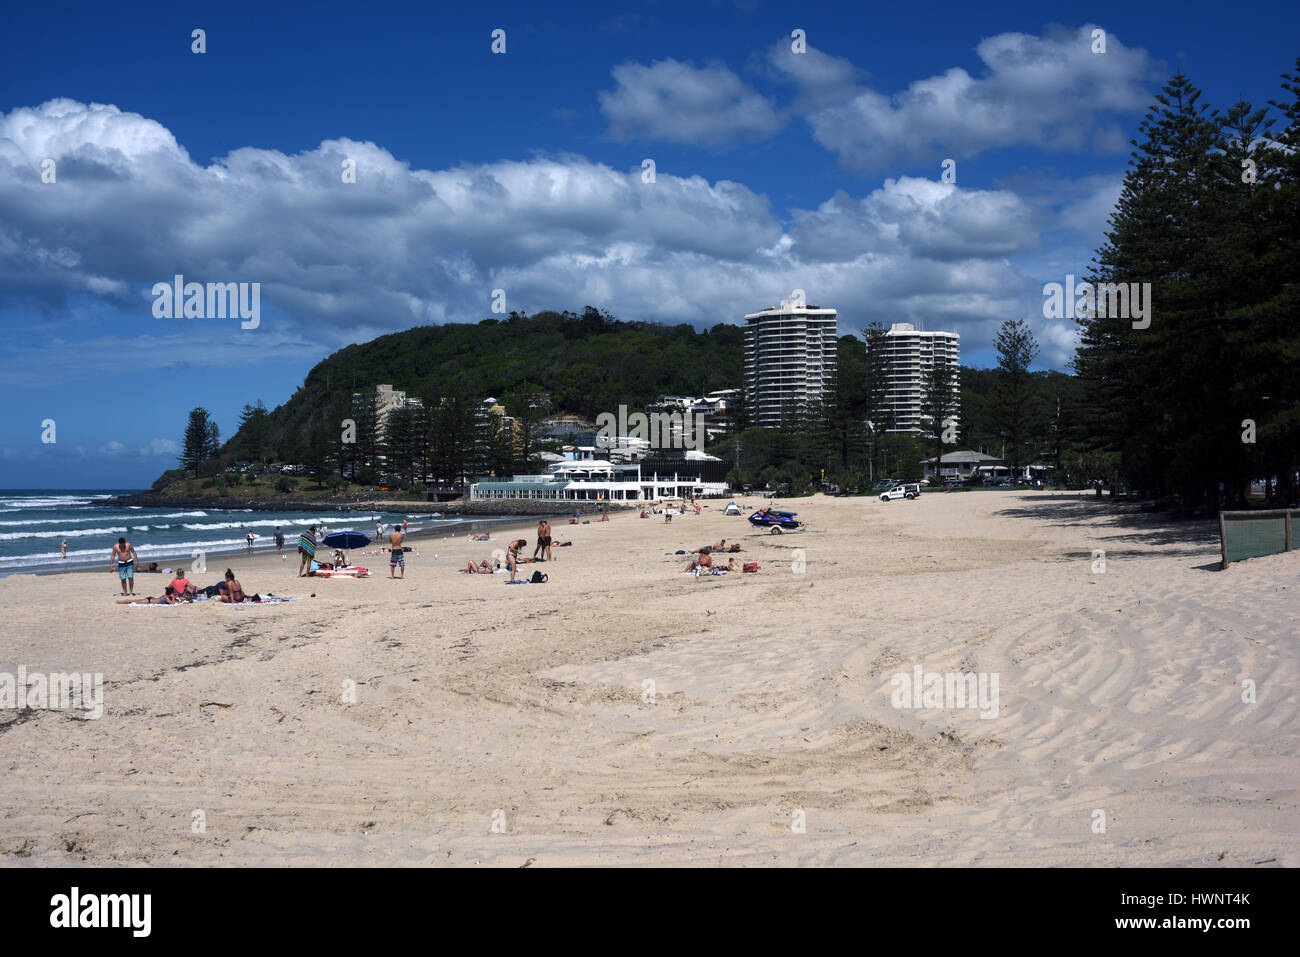 Los turistas en la playa de Burleigh Heads, parte de la Costa de Oro australiana. Foto de stock